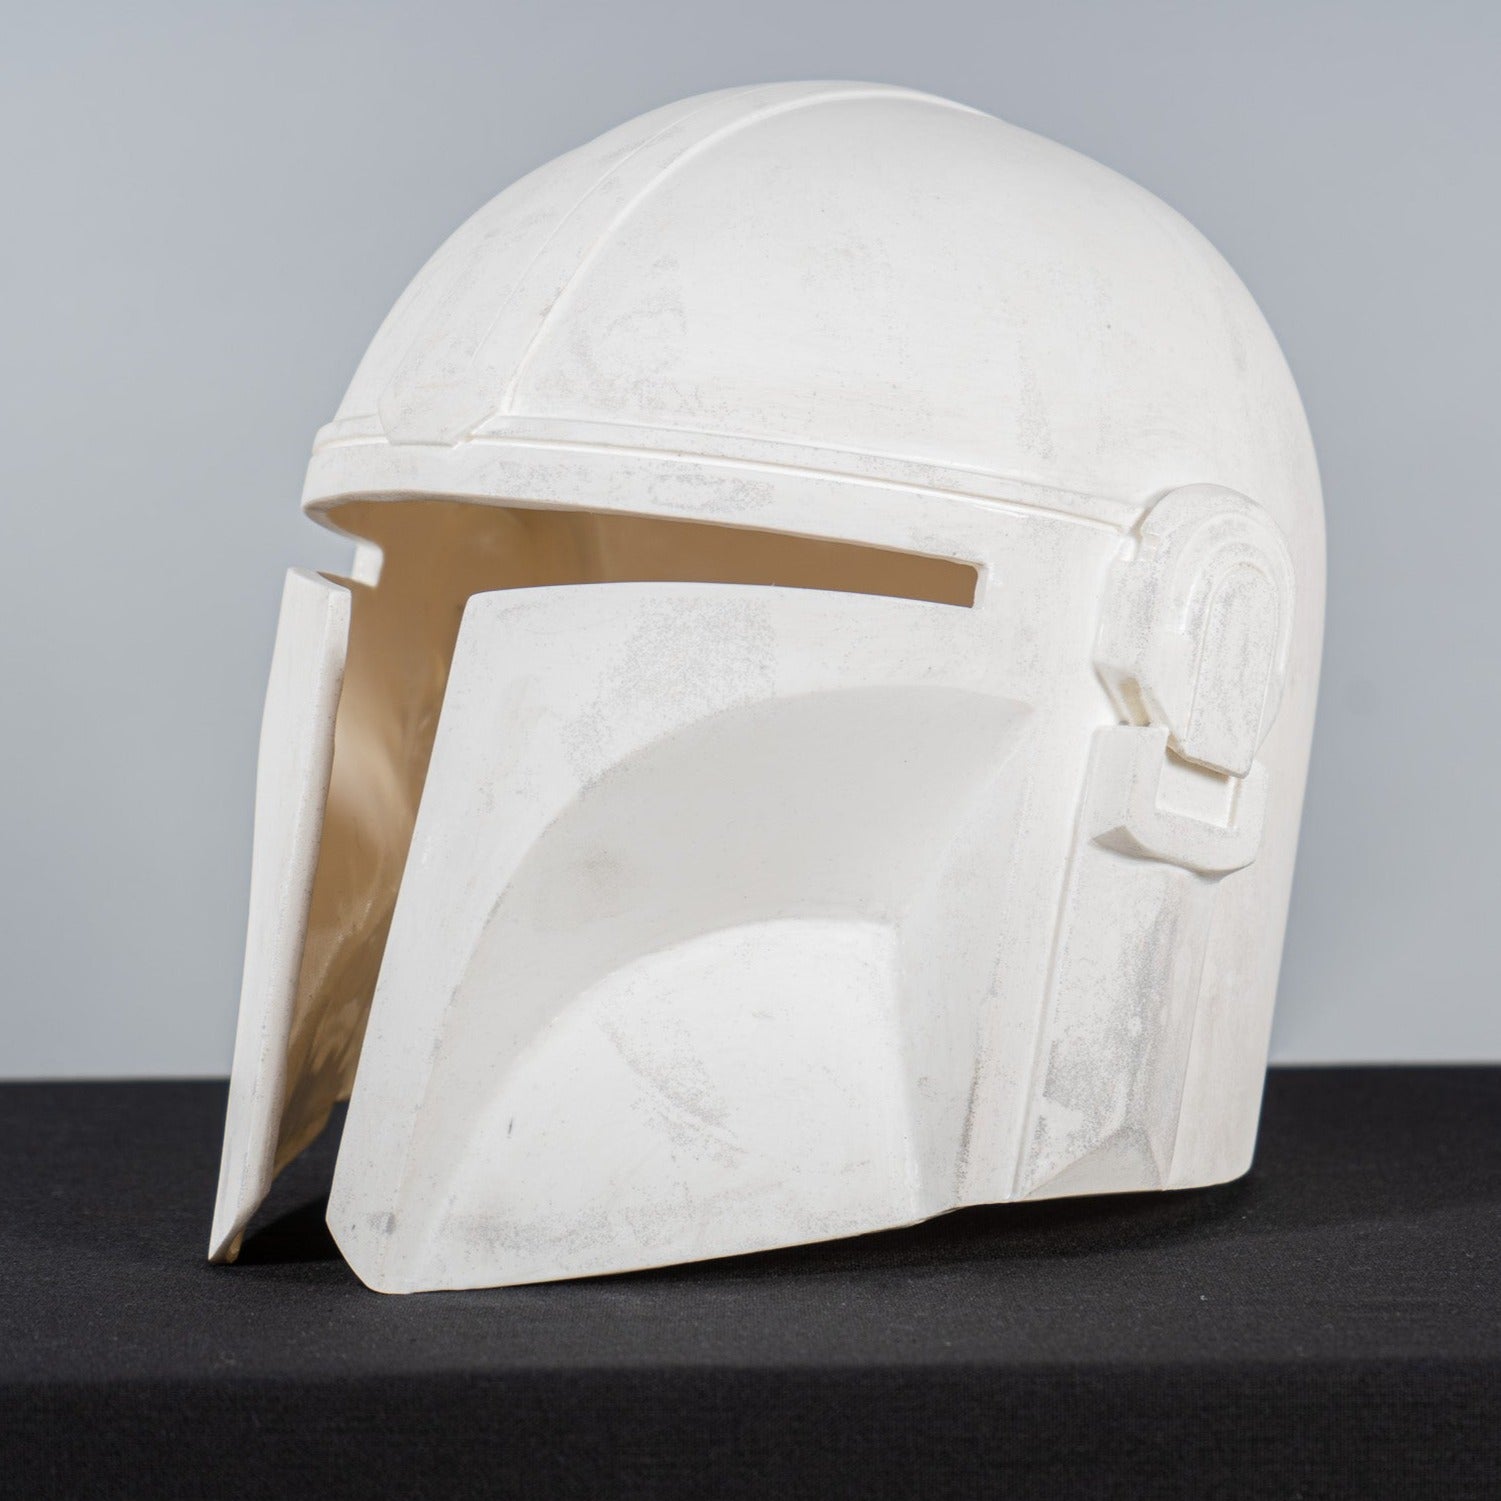 mandalorian helmet template